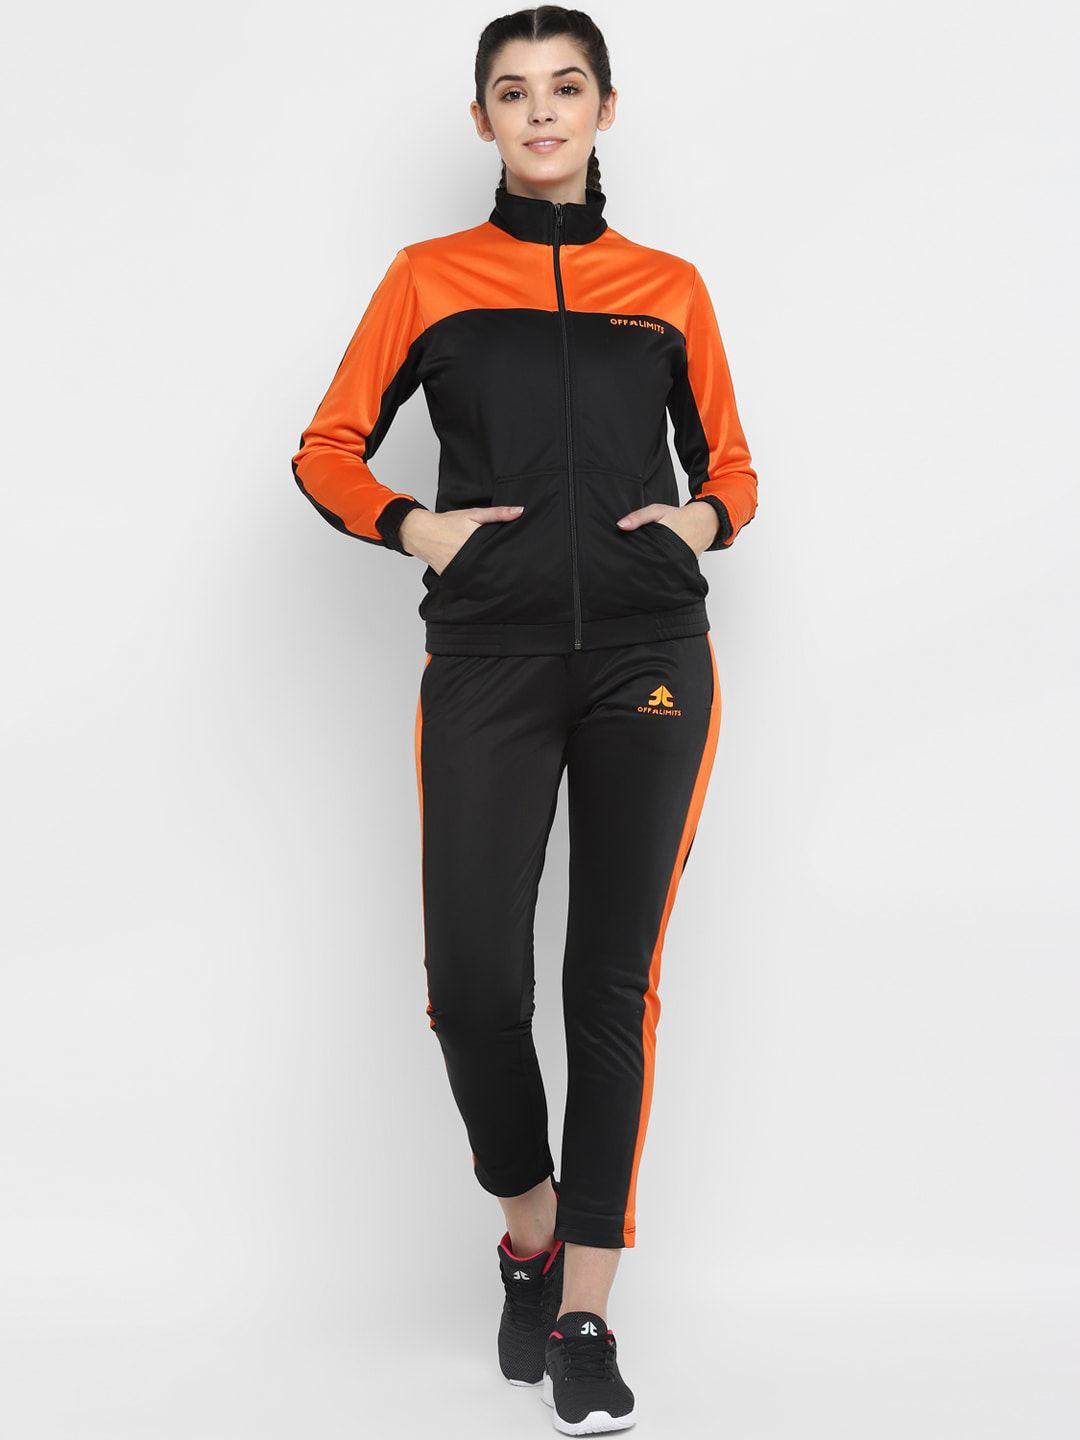 off-limits-women-black-&-orange-colorblocked-track-suit